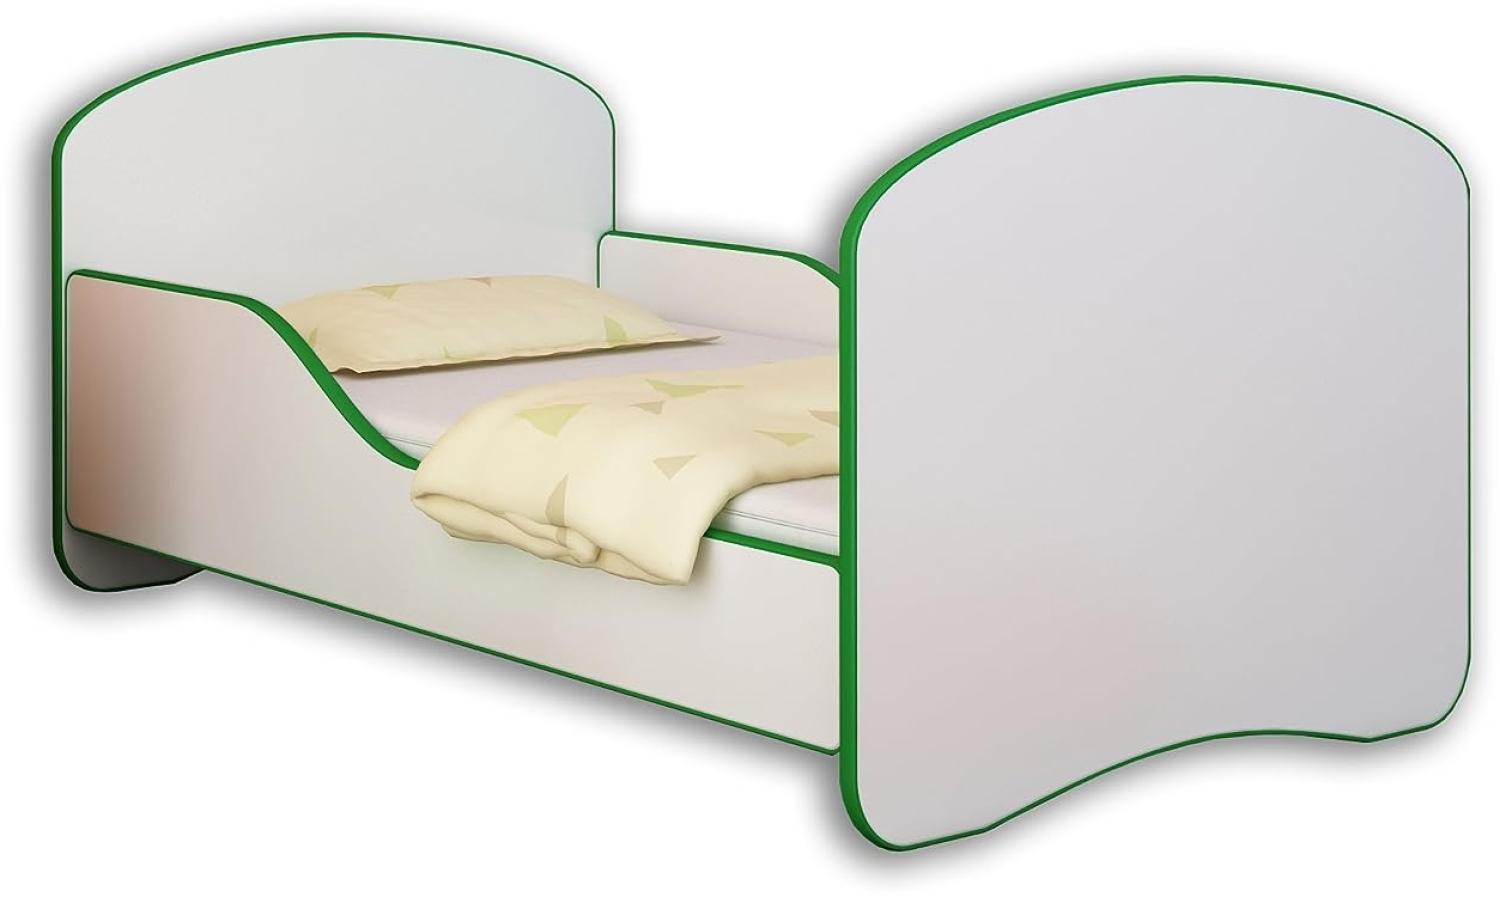 Jugendbett Kinderbett mit einer Schublade und Matratze Weiß ACMA I 140 160 180 (180x80 cm,Grün) Bild 1